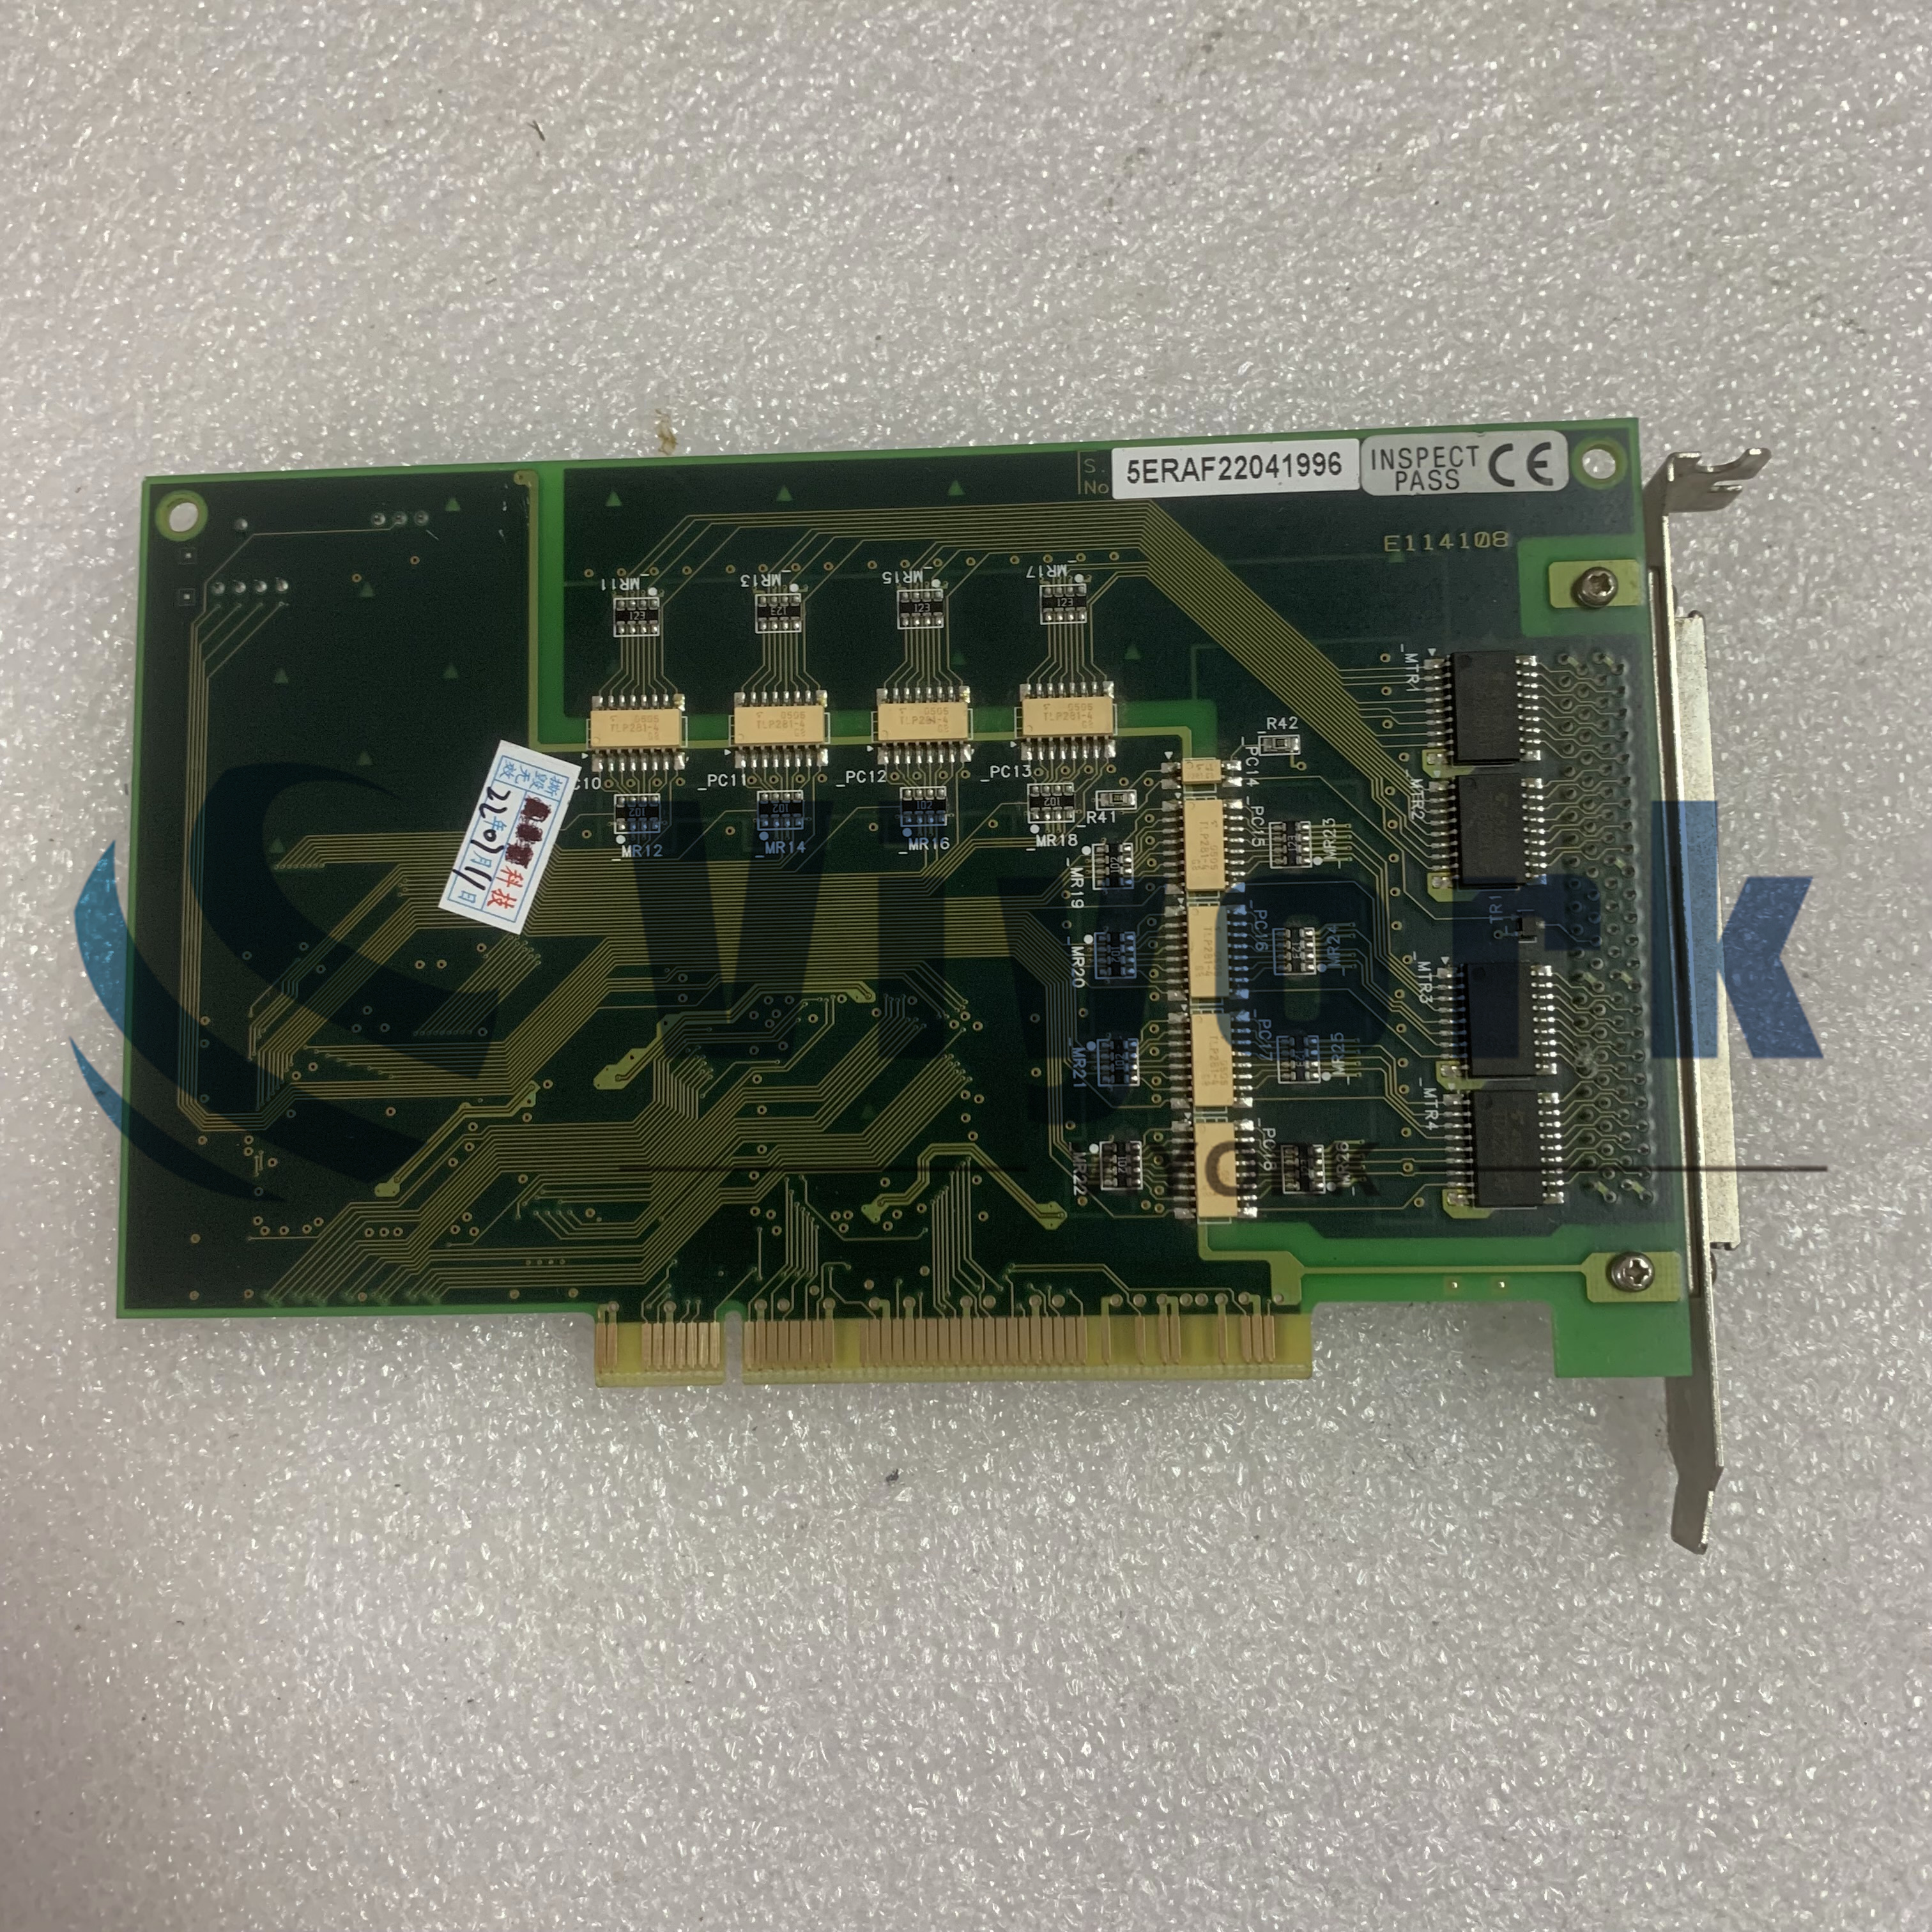 PI0-3232L(PCI)No.7097A